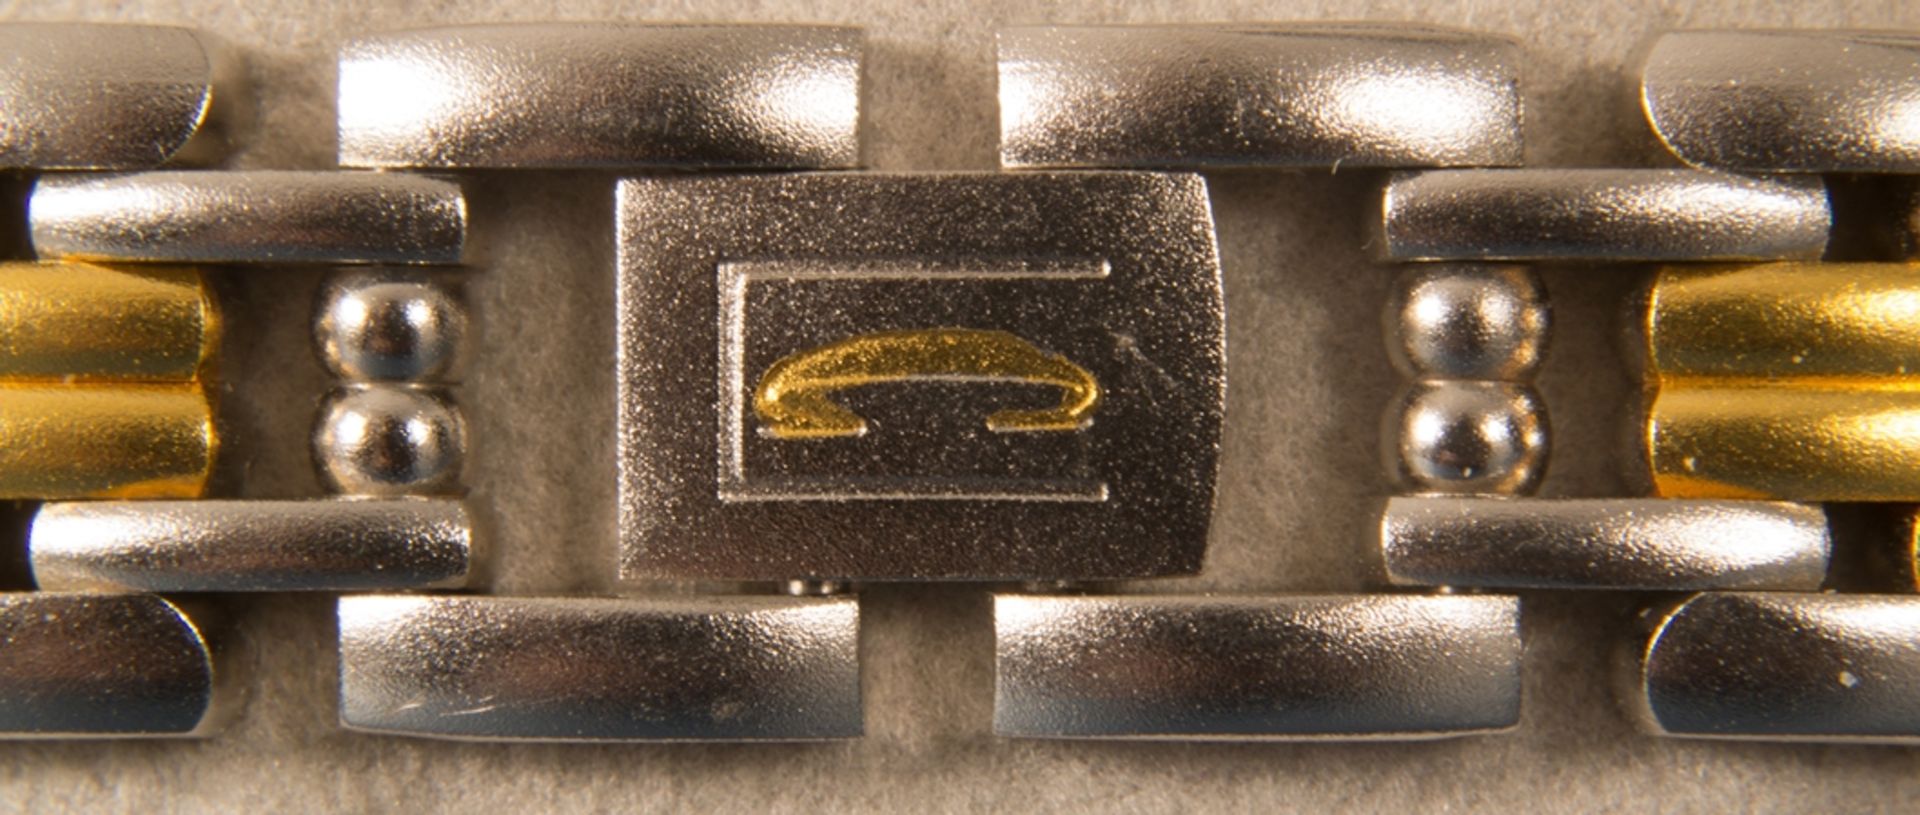 CITIZEN - CLARITI - BICOLOR (Stahl/Gold) Damenarmbanduhr, Ziffernblatt mit figürlicher Vignette (Reh - Image 6 of 8